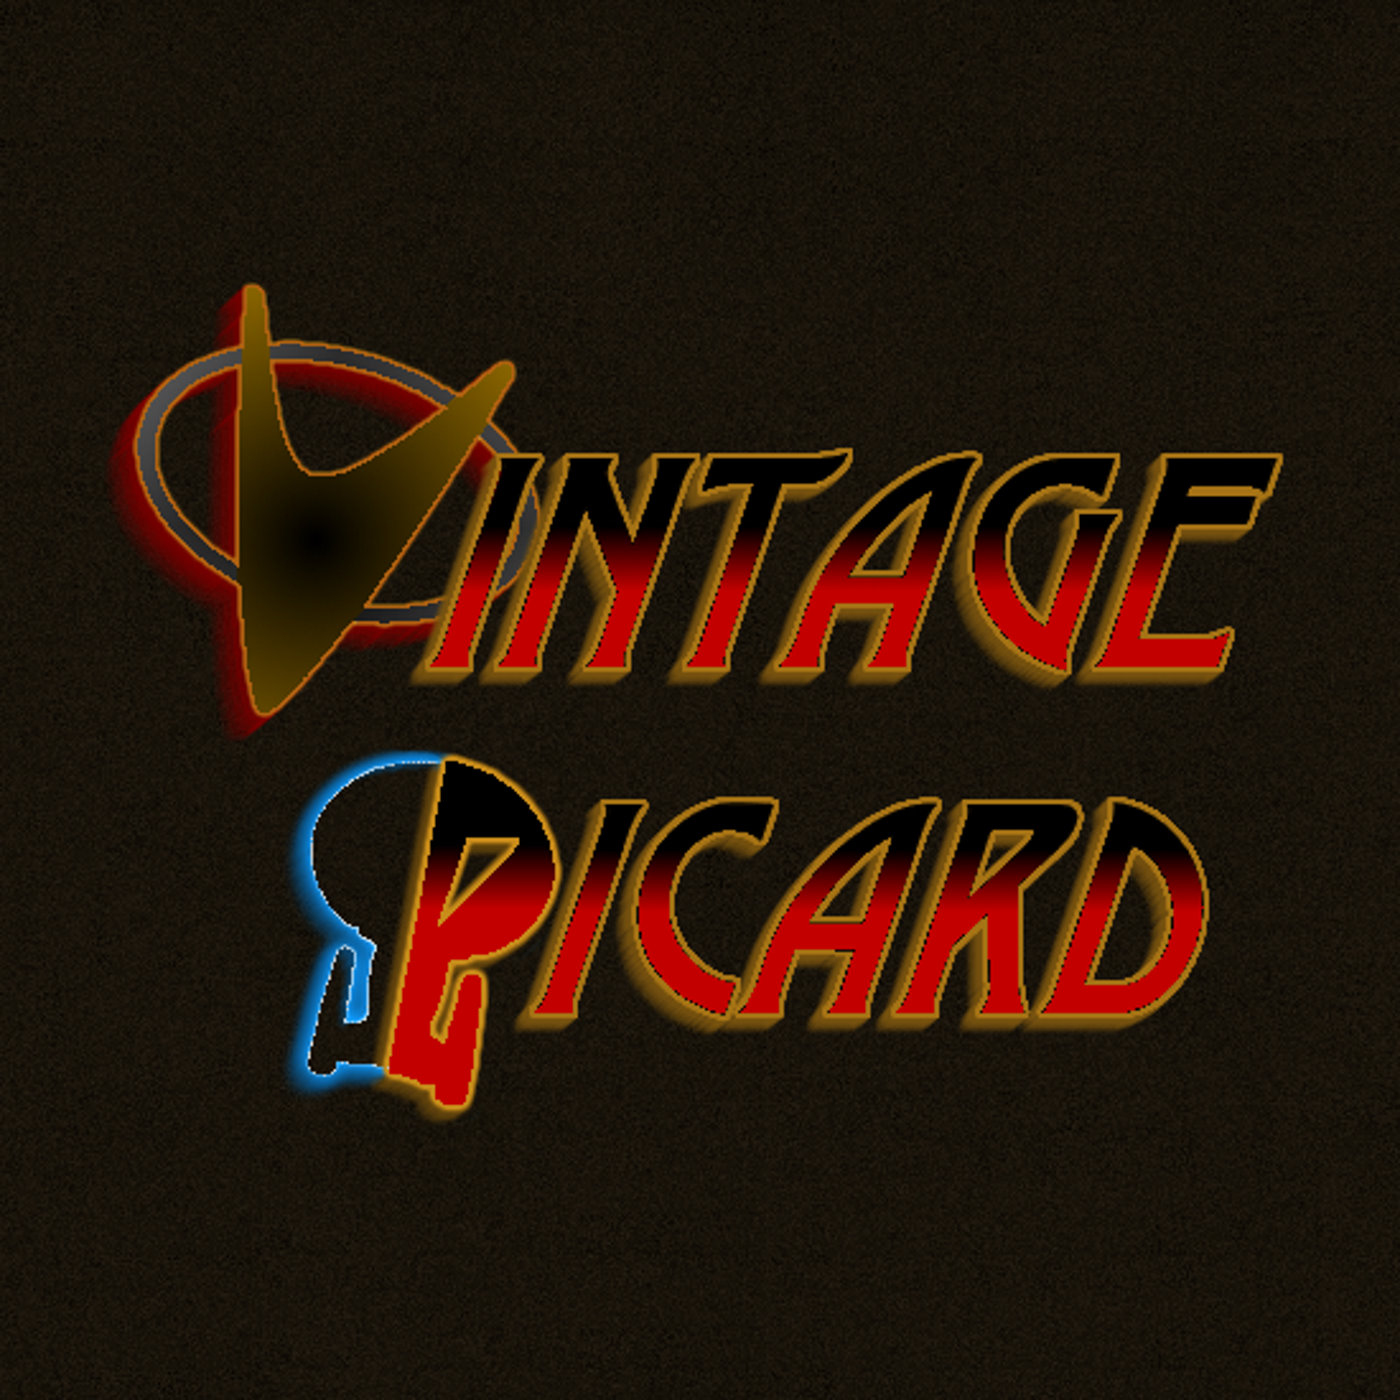 Vintage Picard